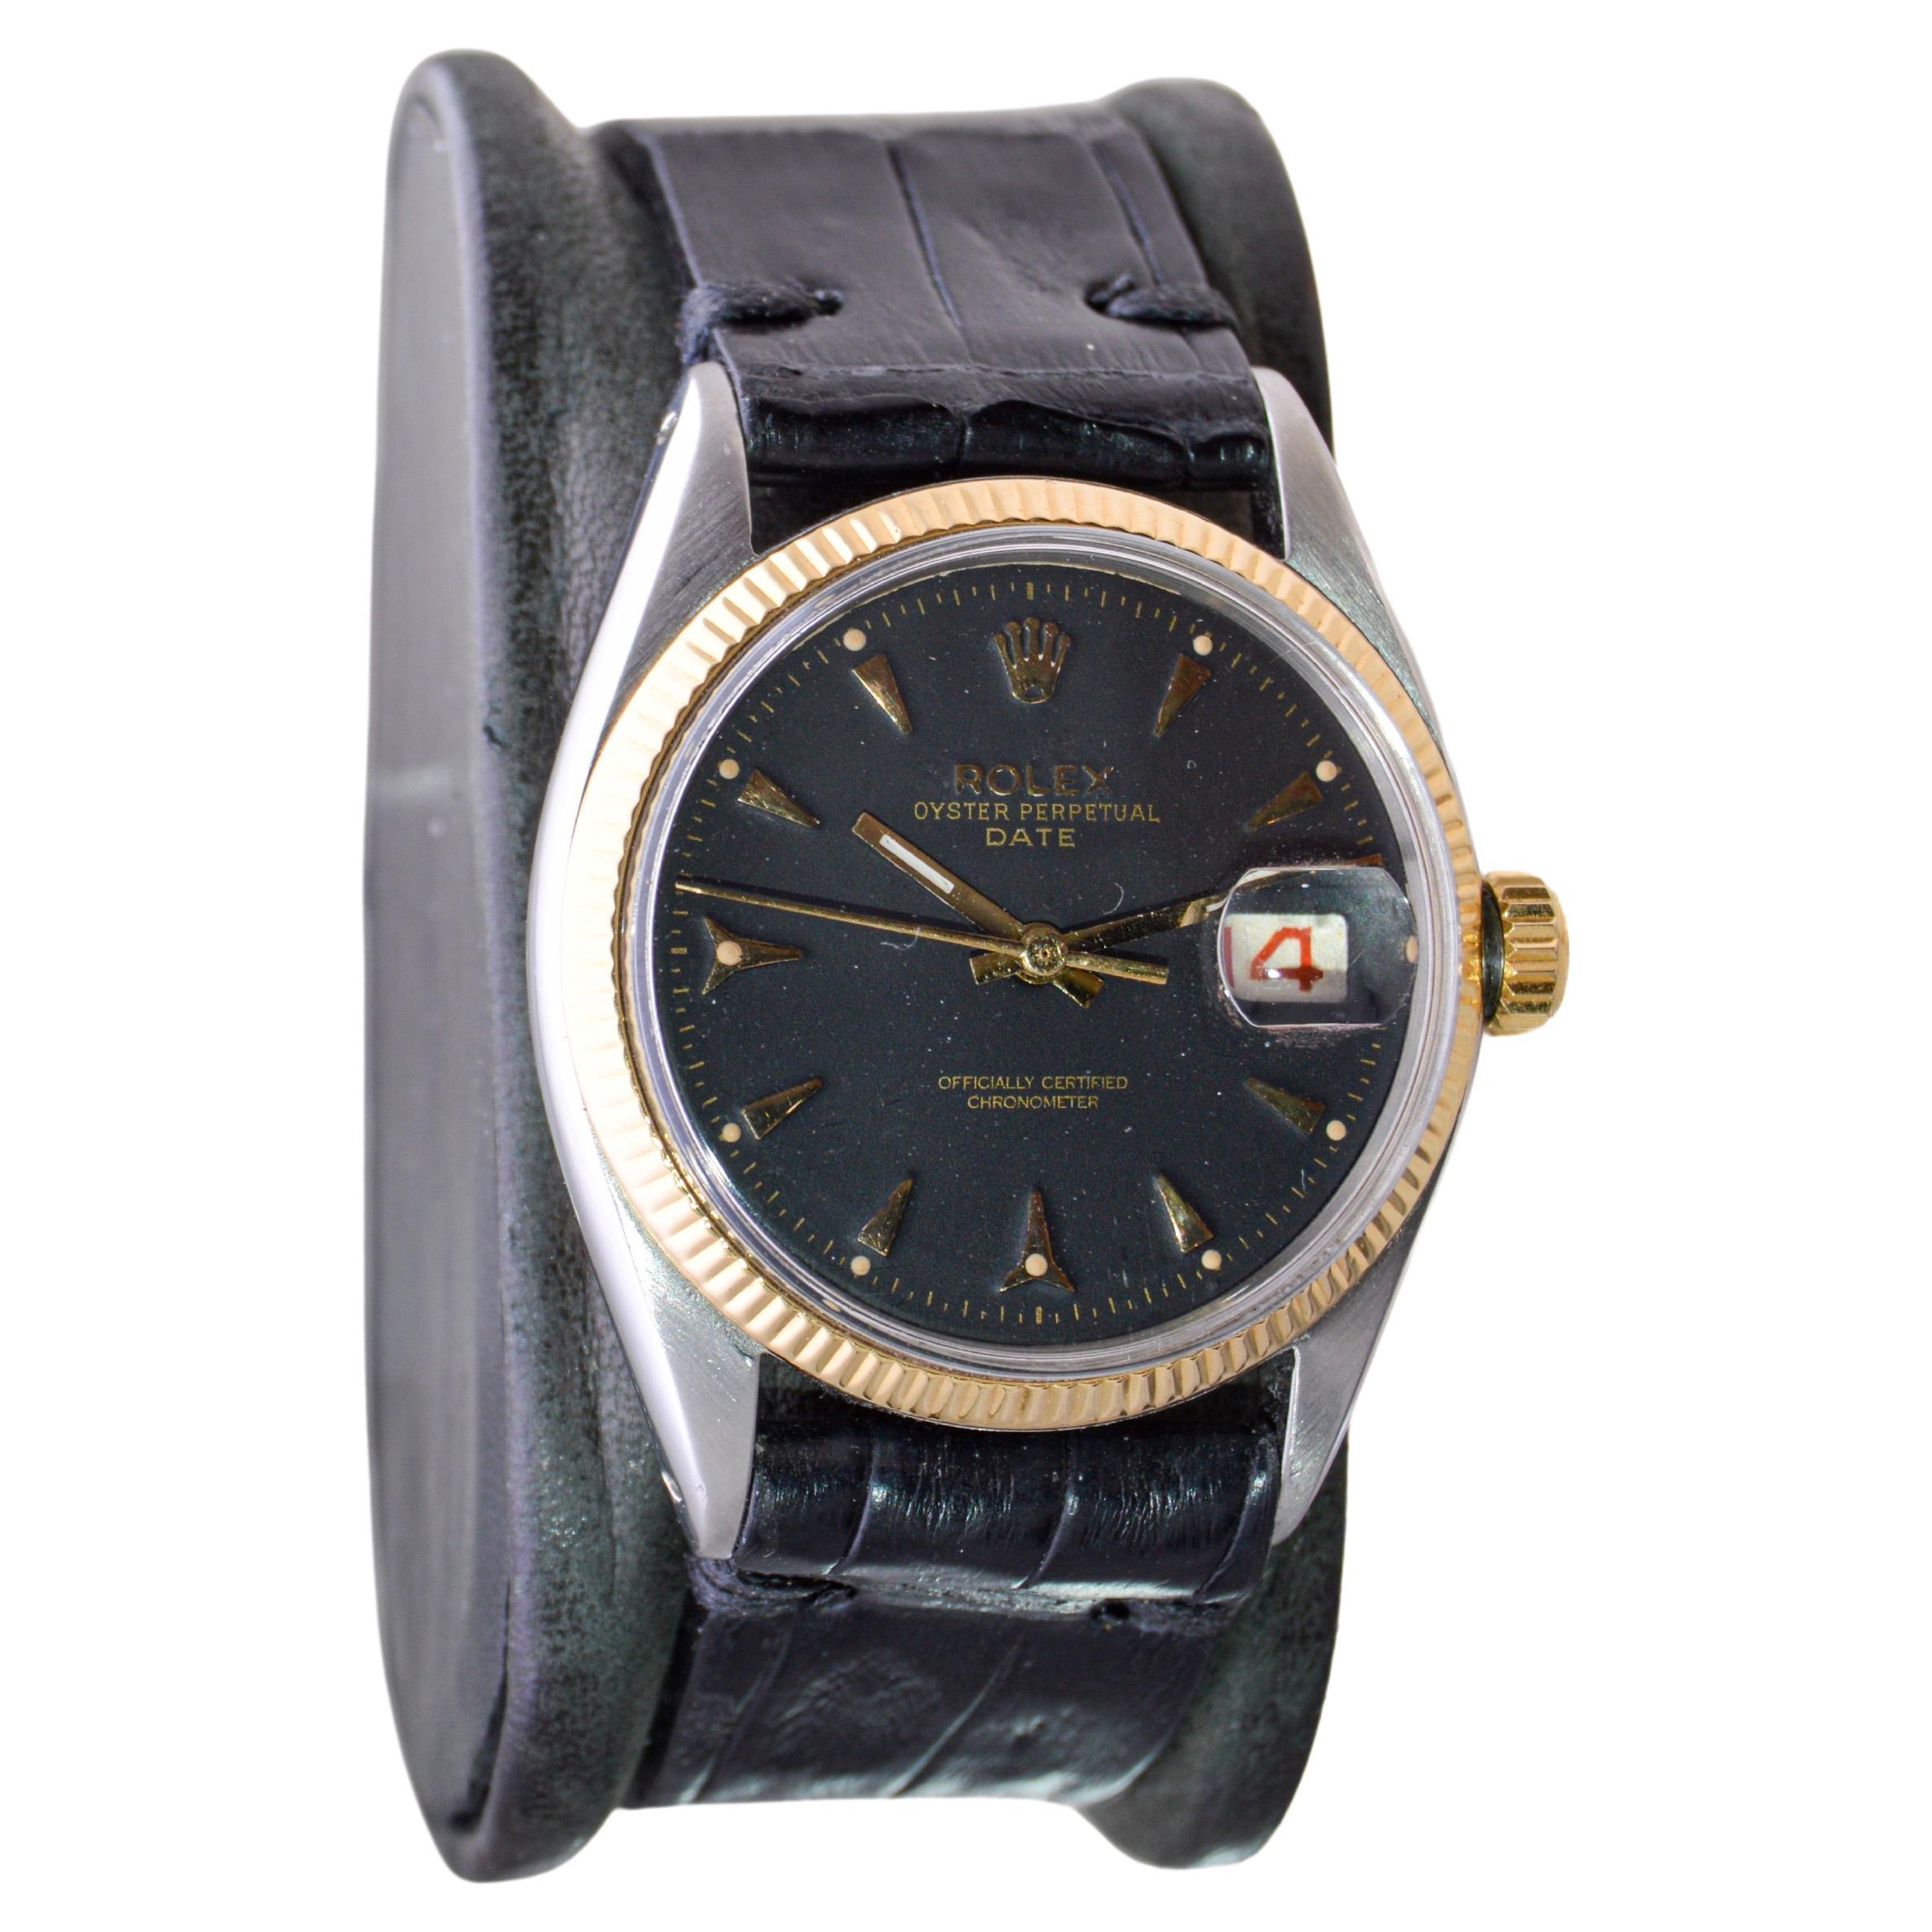 FABRIK / HAUS: Rolex Watch Company
STIL / REFERENZ: Oyster Perpetual Date / Referenz 6532
METALL / MATERIAL: Rostfreier Stahl und 14Kt Gold
CA. / JAHR: 1953 / 54
ABMESSUNGEN / GRÖSSE: Länge 42mm x Durchmesser 35mm
UHRWERK / KALIBER: Ewiger Aufzug /